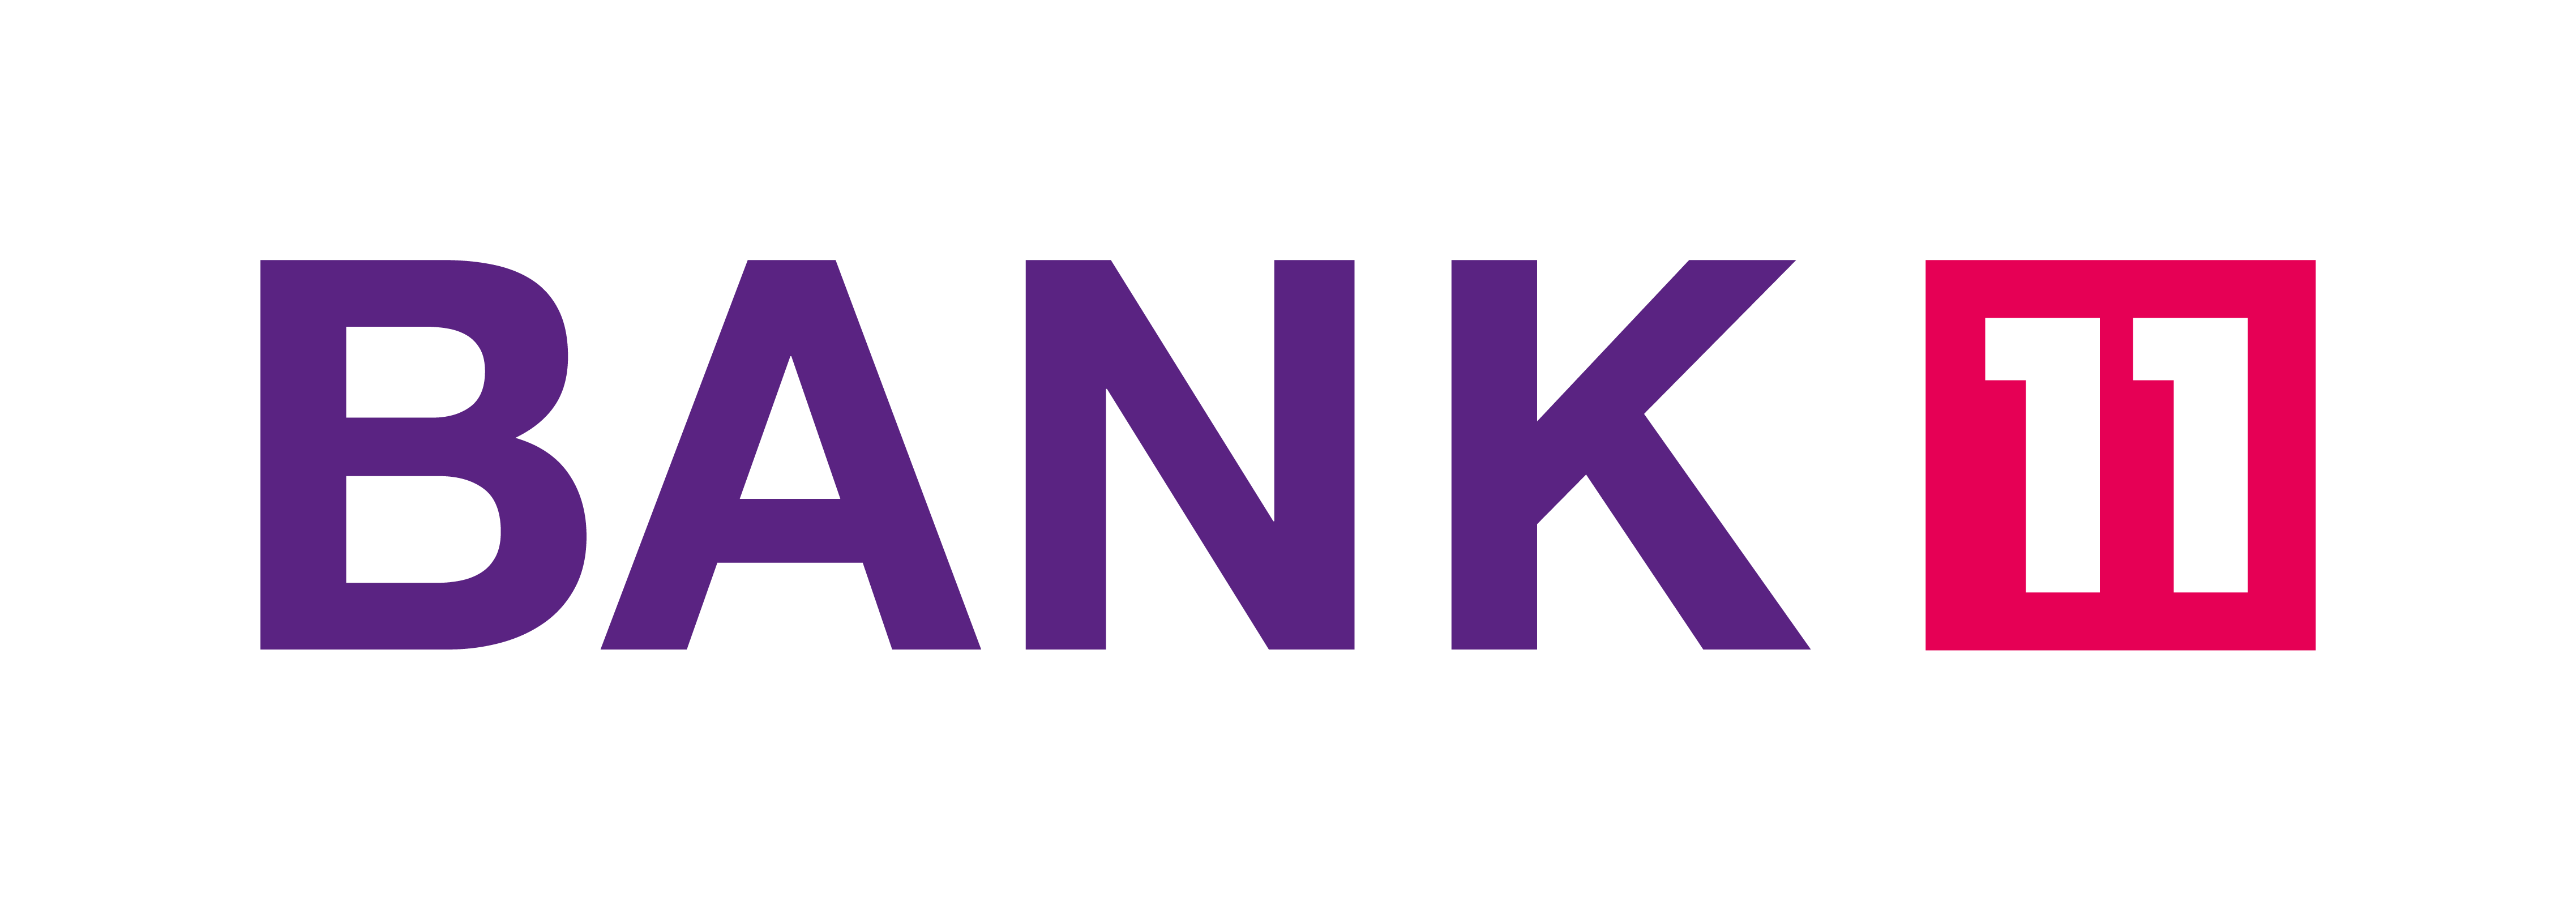 bank11-bank-logo